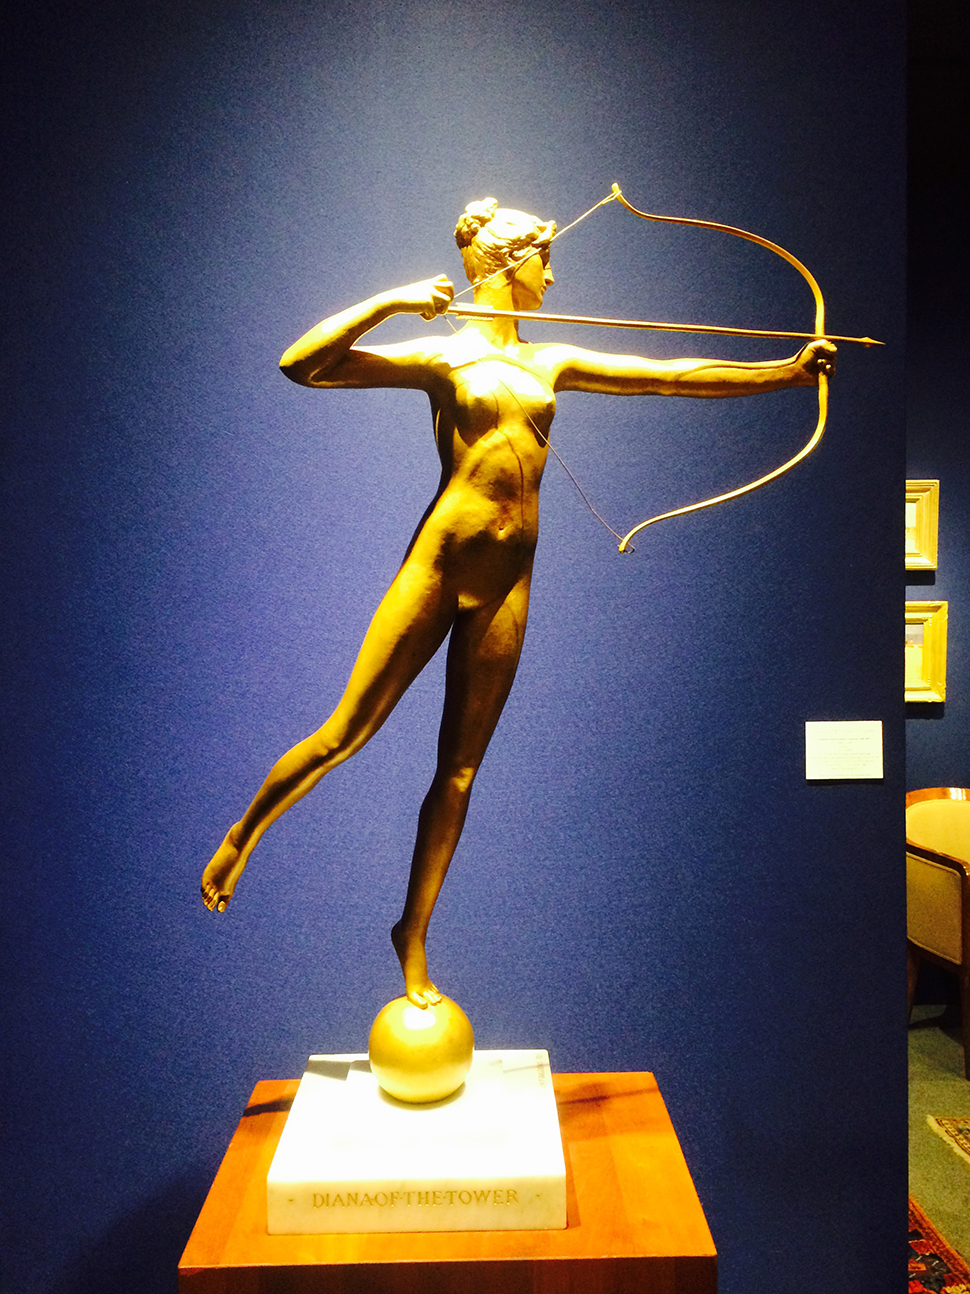 어거스터스 세인트 고든스(Augustus Saint-Gaudens, American, 1848-1907) 〈Diana〉의 축소판 작품 